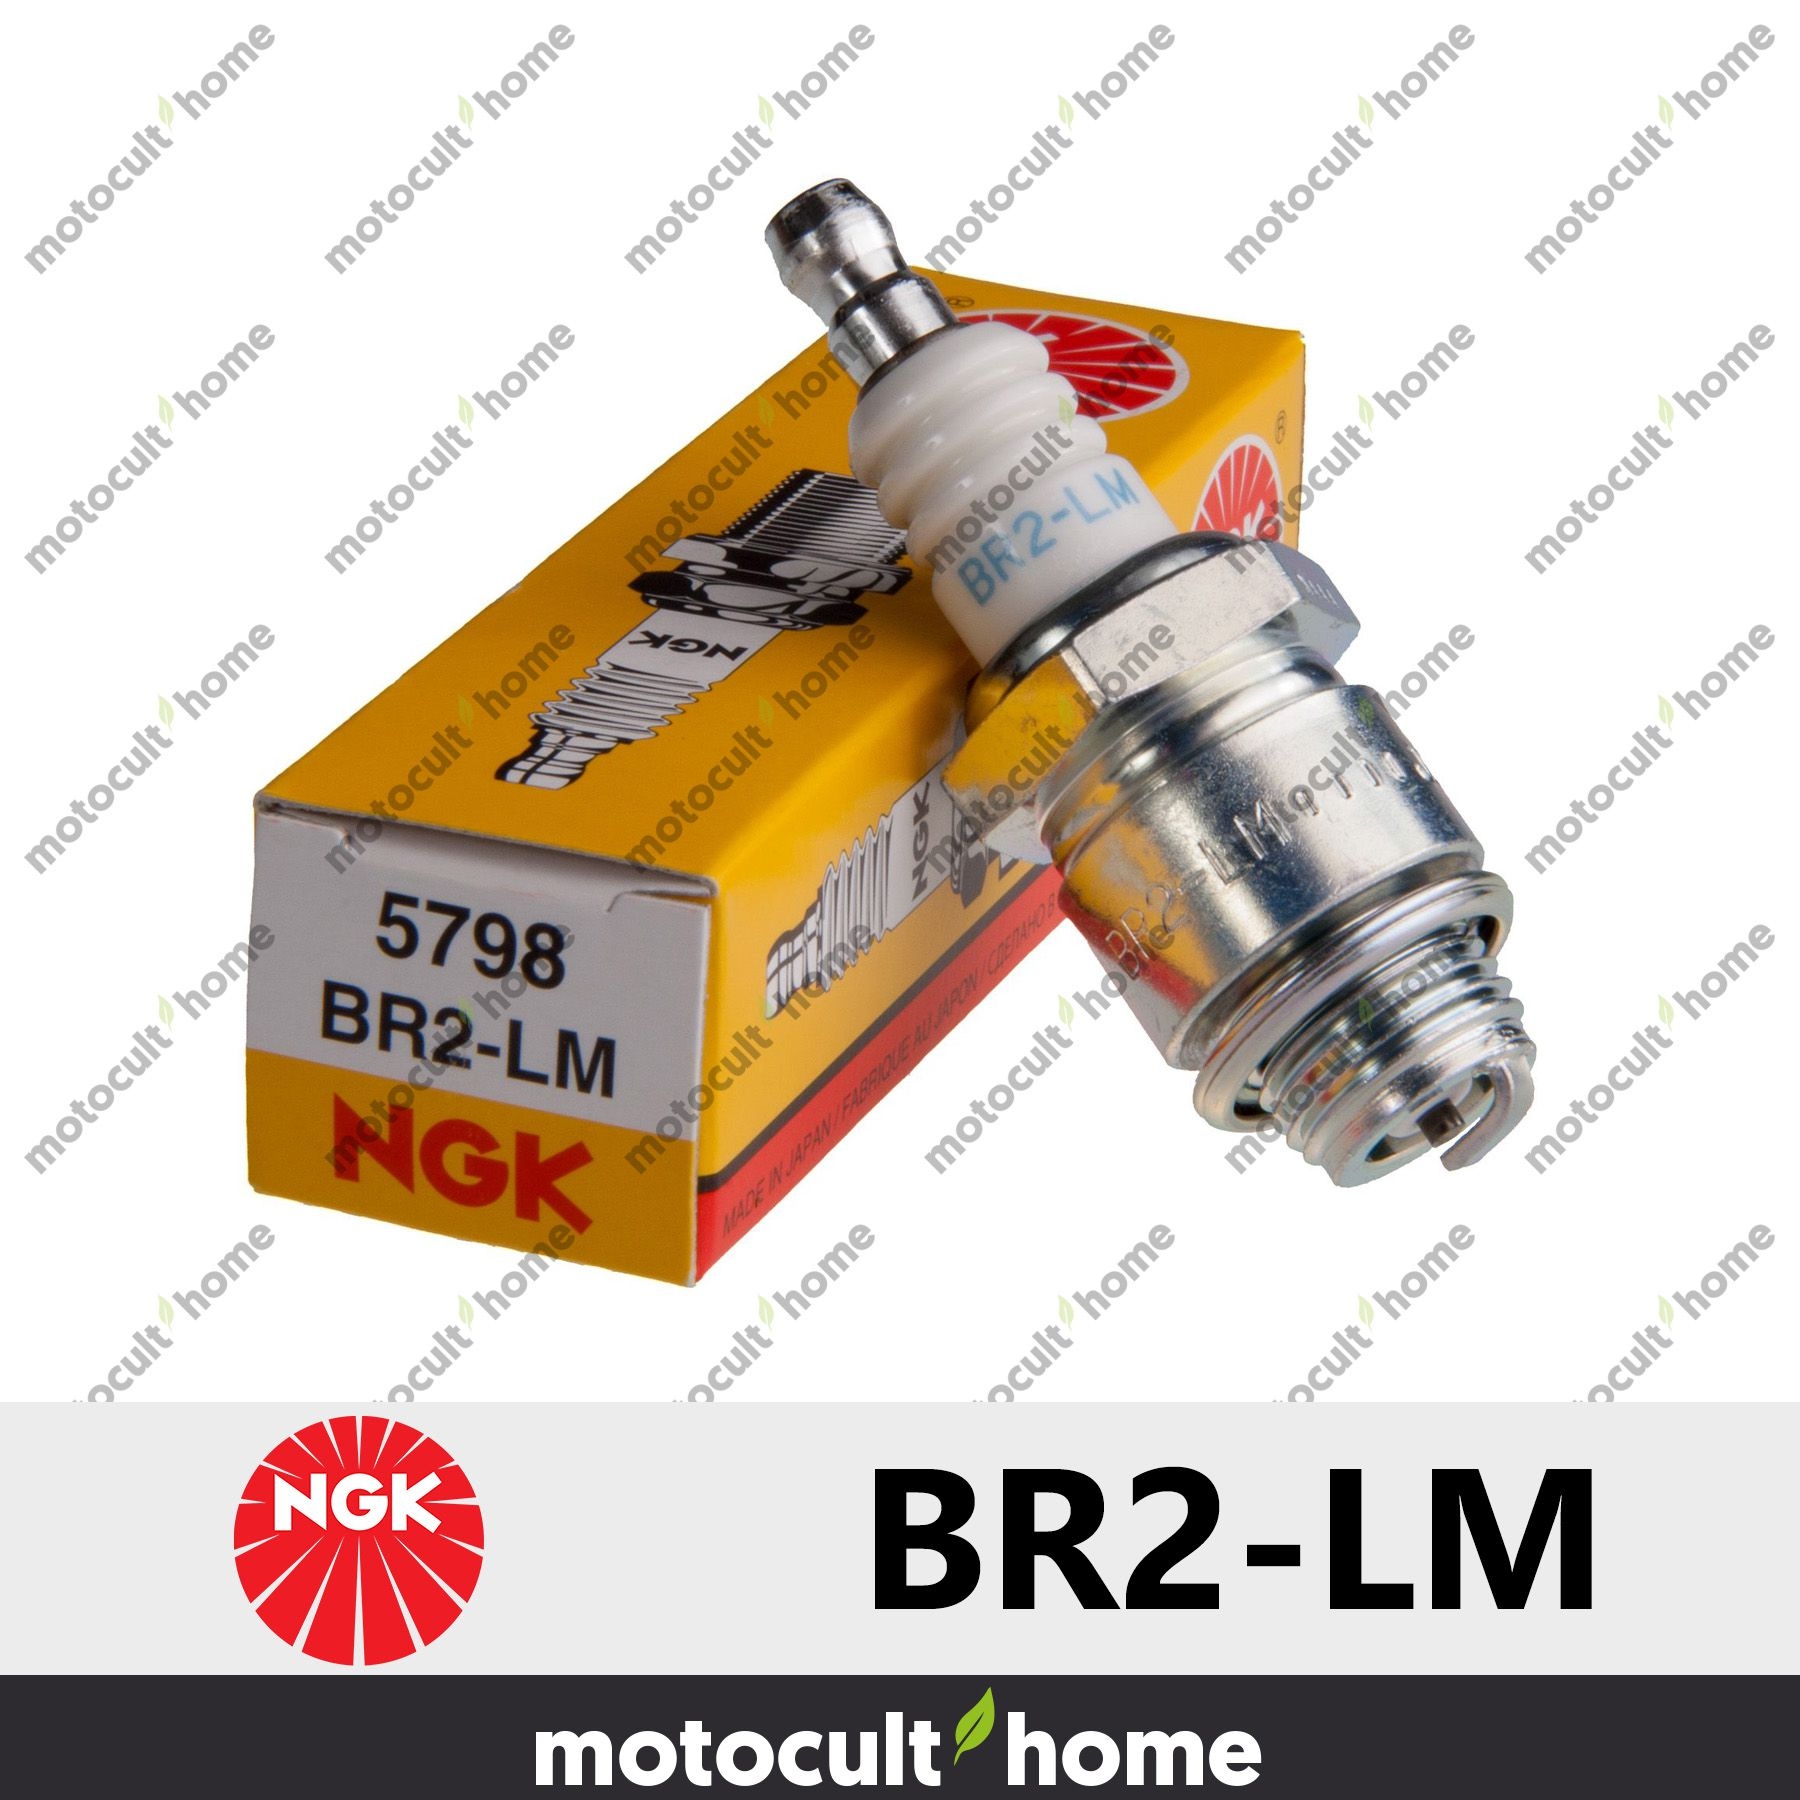 Bougie Ngk BR2-LM Motocult'home